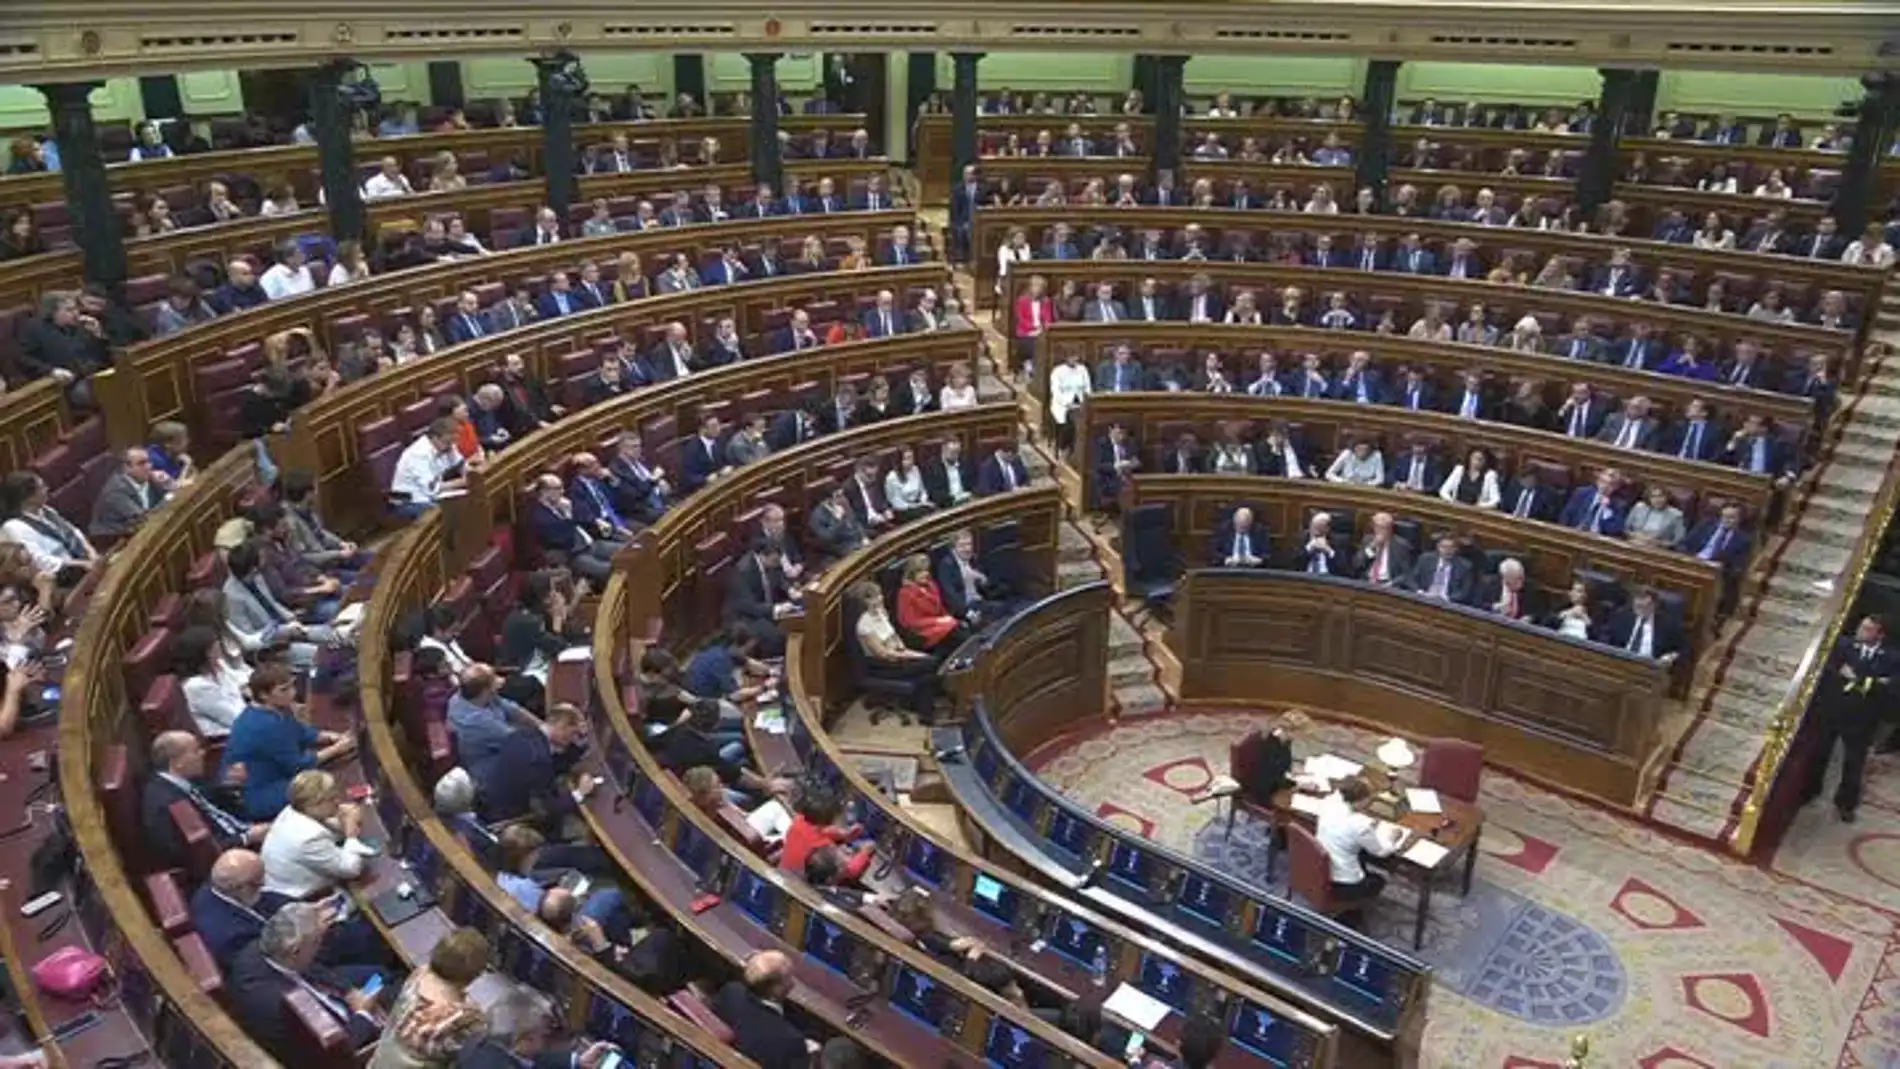 Los diputados proceden a la votación de la investidura de Rajoy